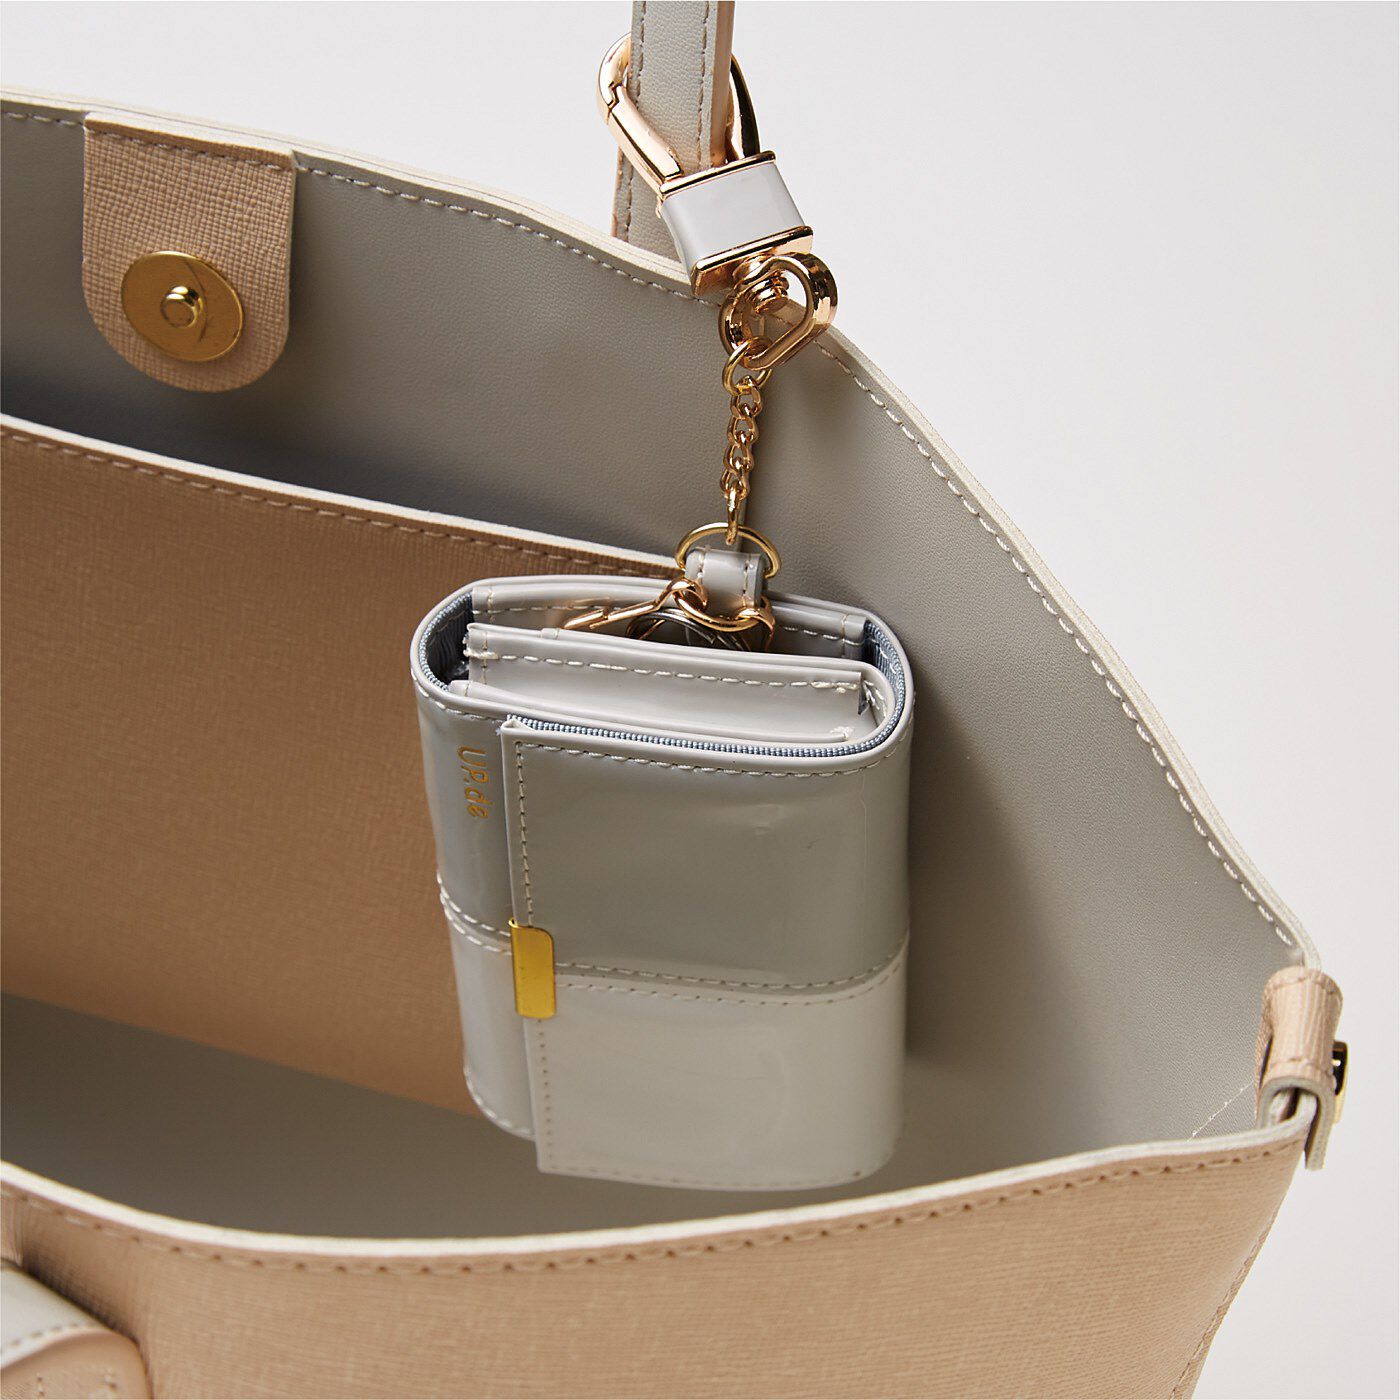 フェリシモの雑貨 Kraso|UP.de　キーリング付き 必要なものがきちんと収まる 手のひらサイズの大人エナメル財布の会|ナスカンでバッグの持ち手に取り付けることも。